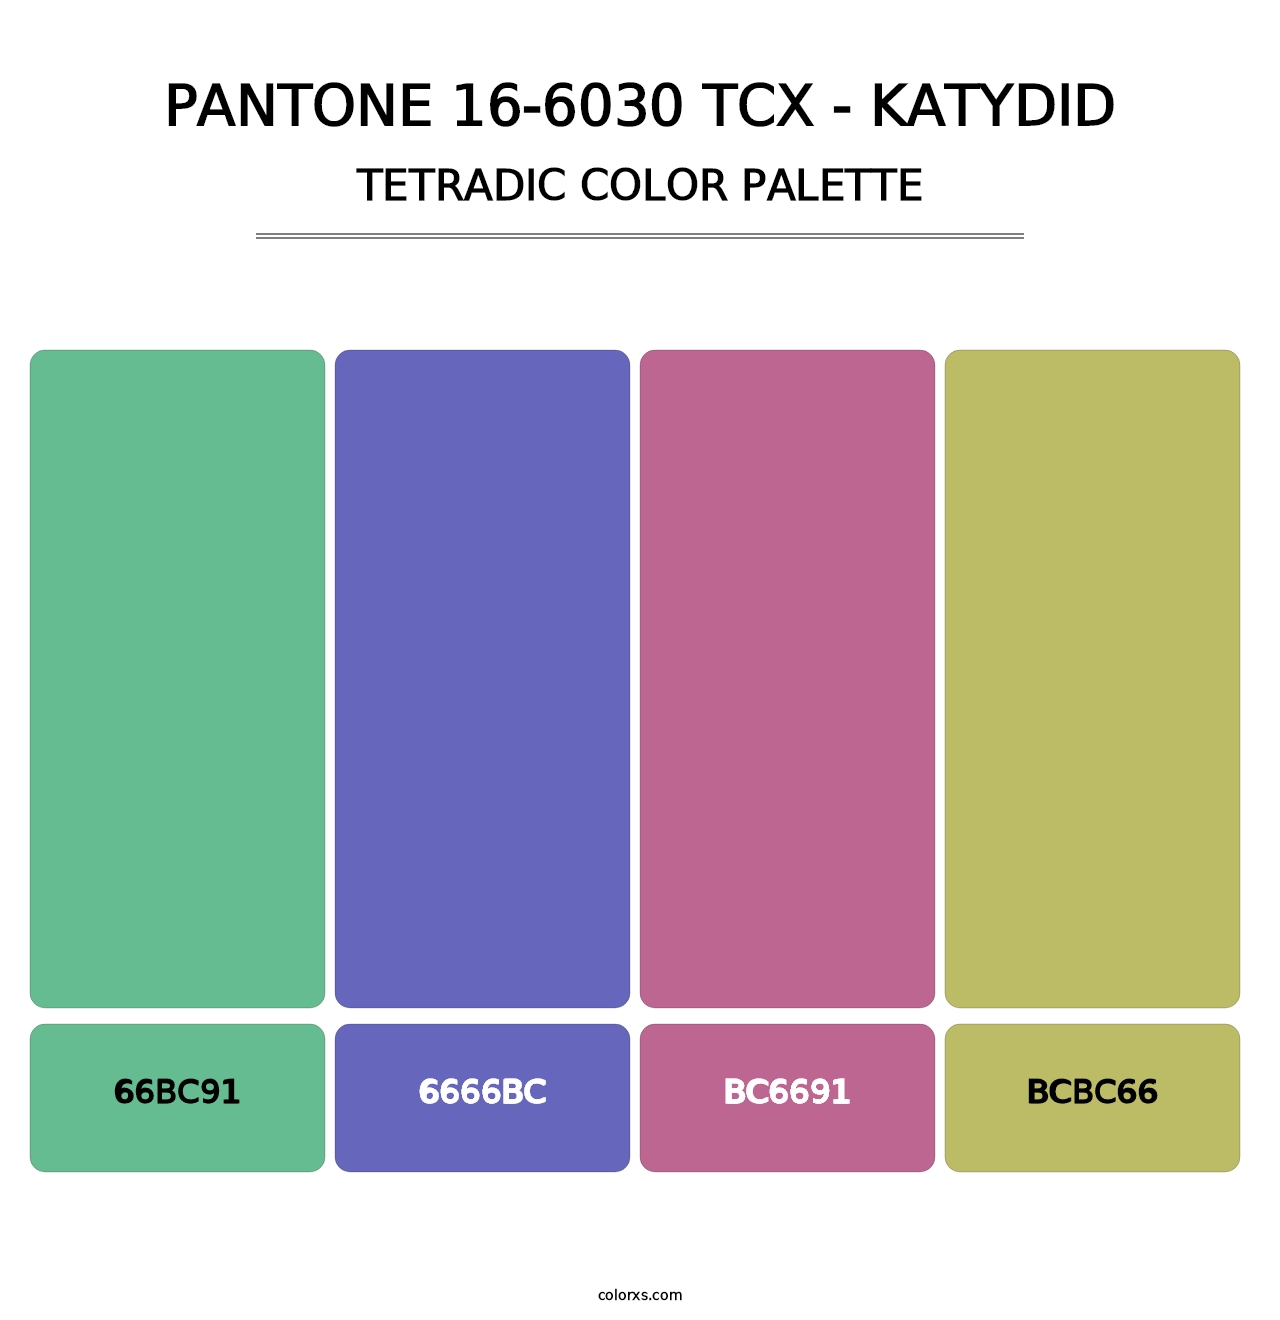 PANTONE 16-6030 TCX - Katydid - Tetradic Color Palette